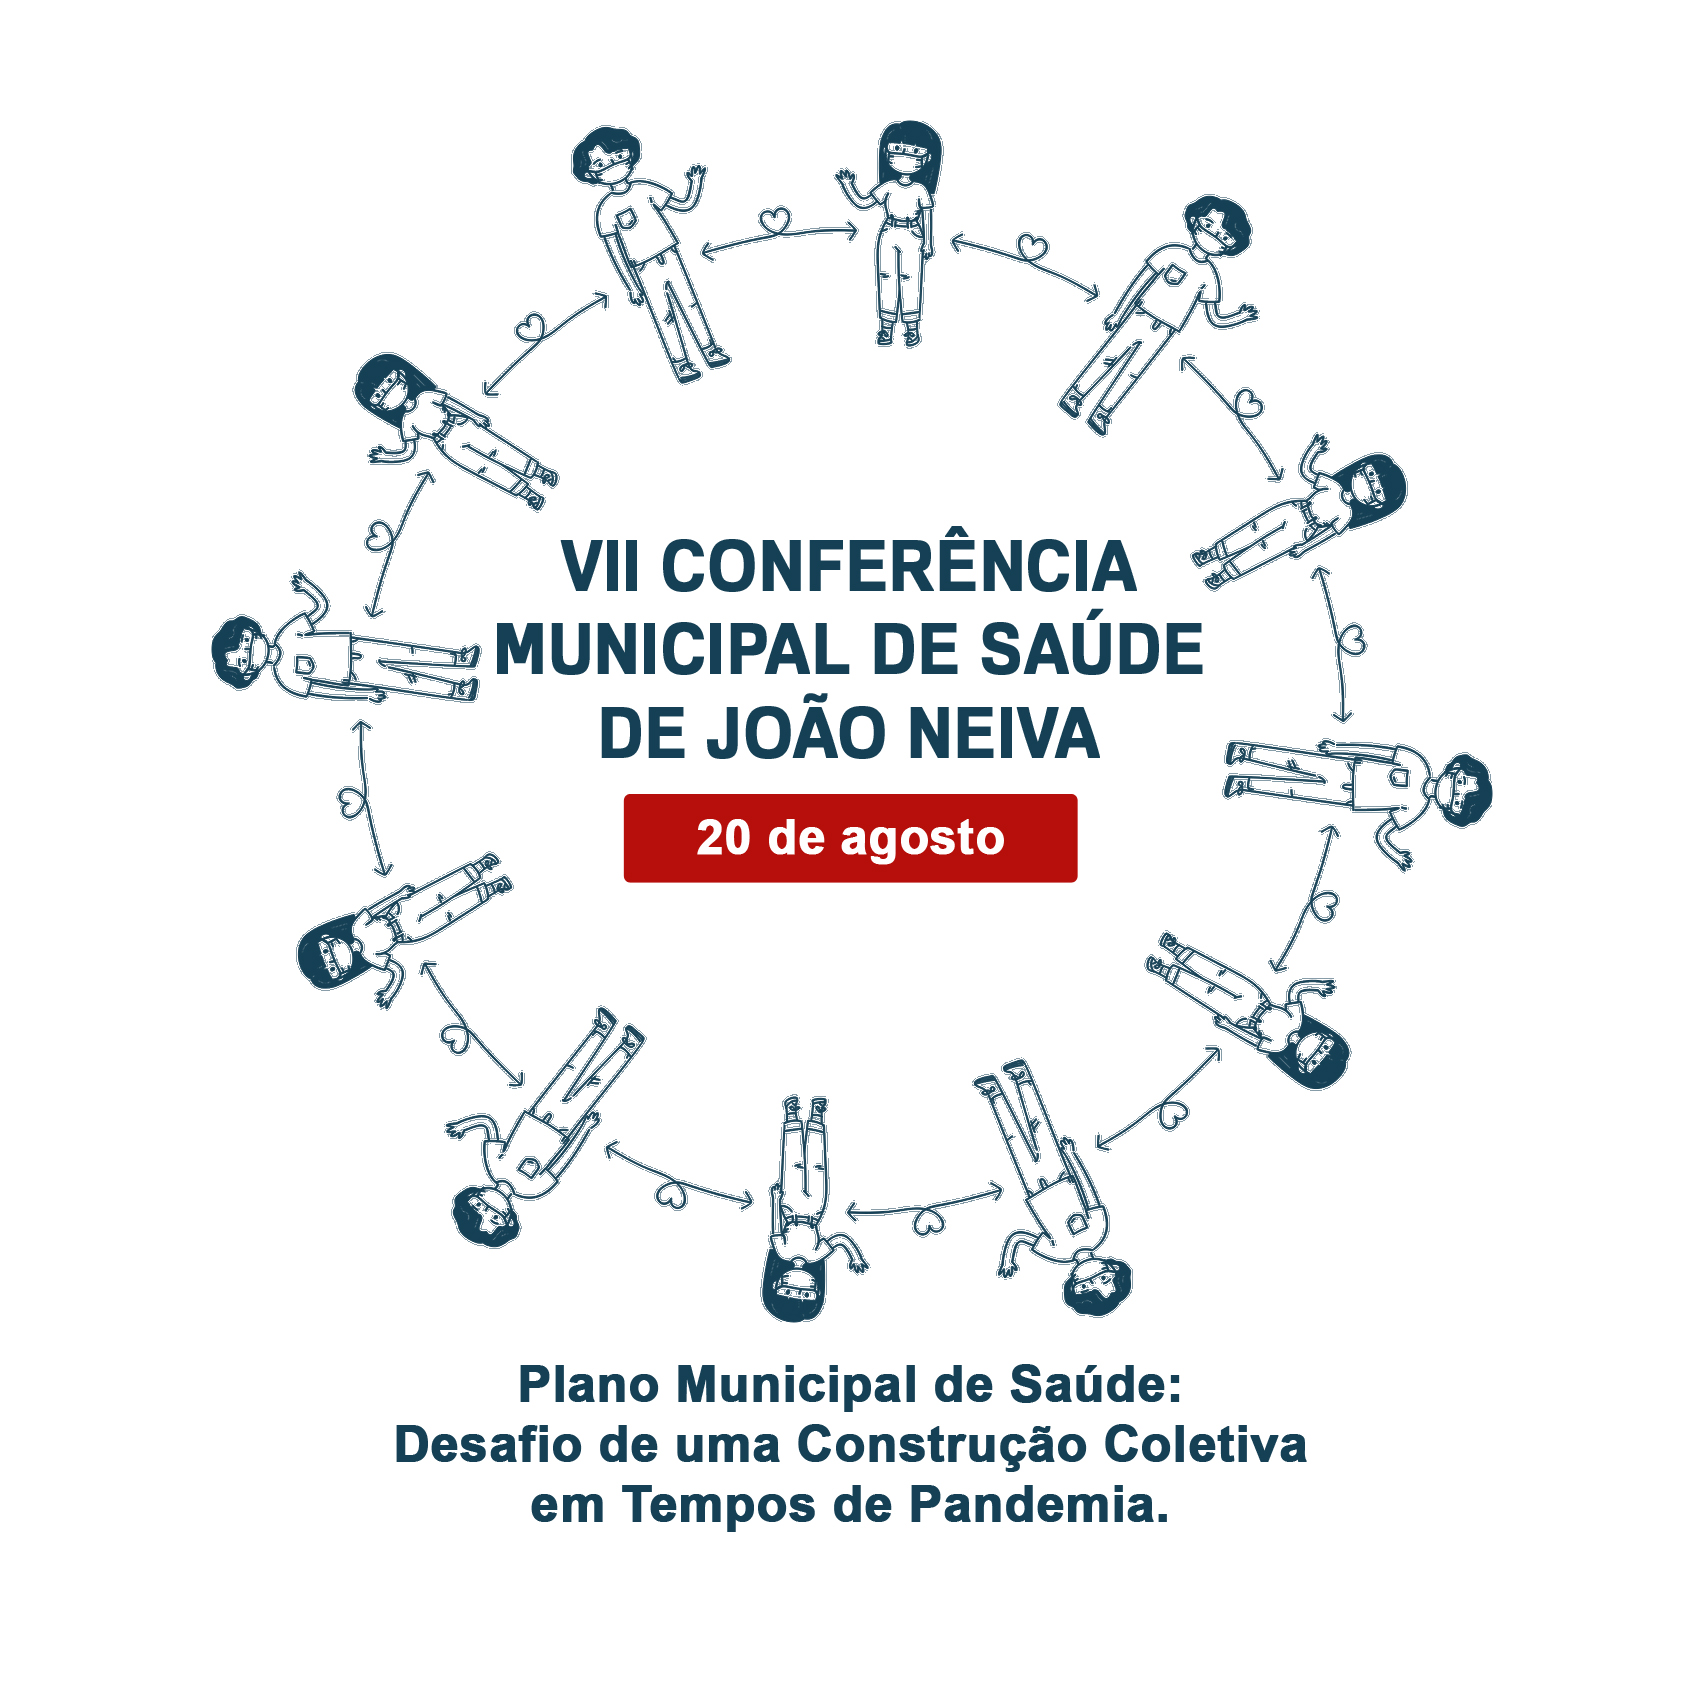 Logo da “VII Conferência Municipal de Saúde de João Neiva”.